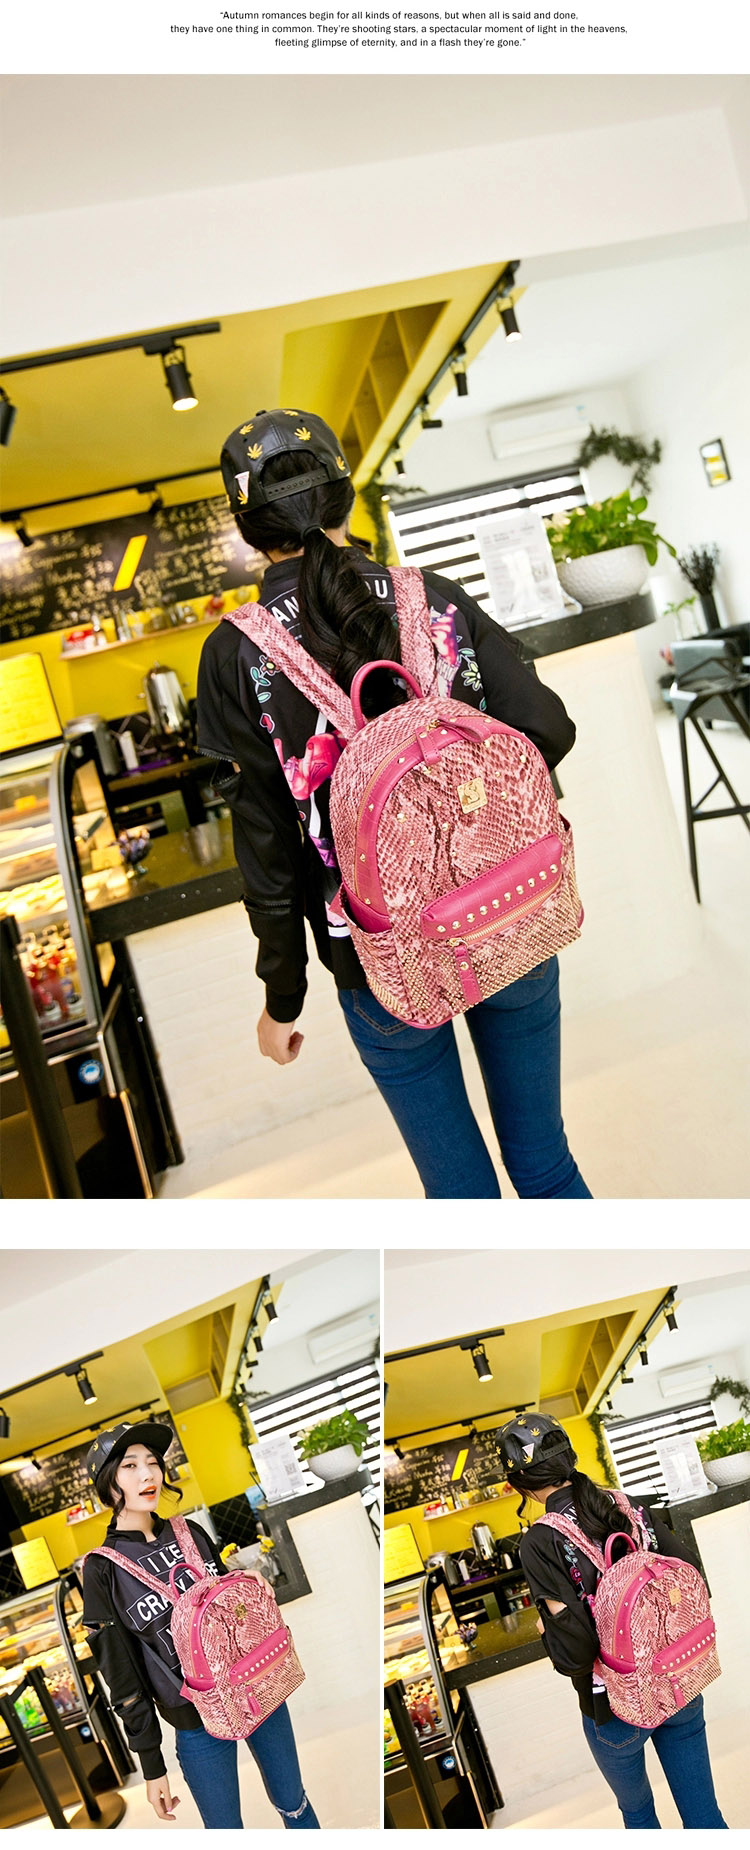 新款韩版旅游背包铆钉蛇纹双肩包朋克韩版潮女包书包YG161